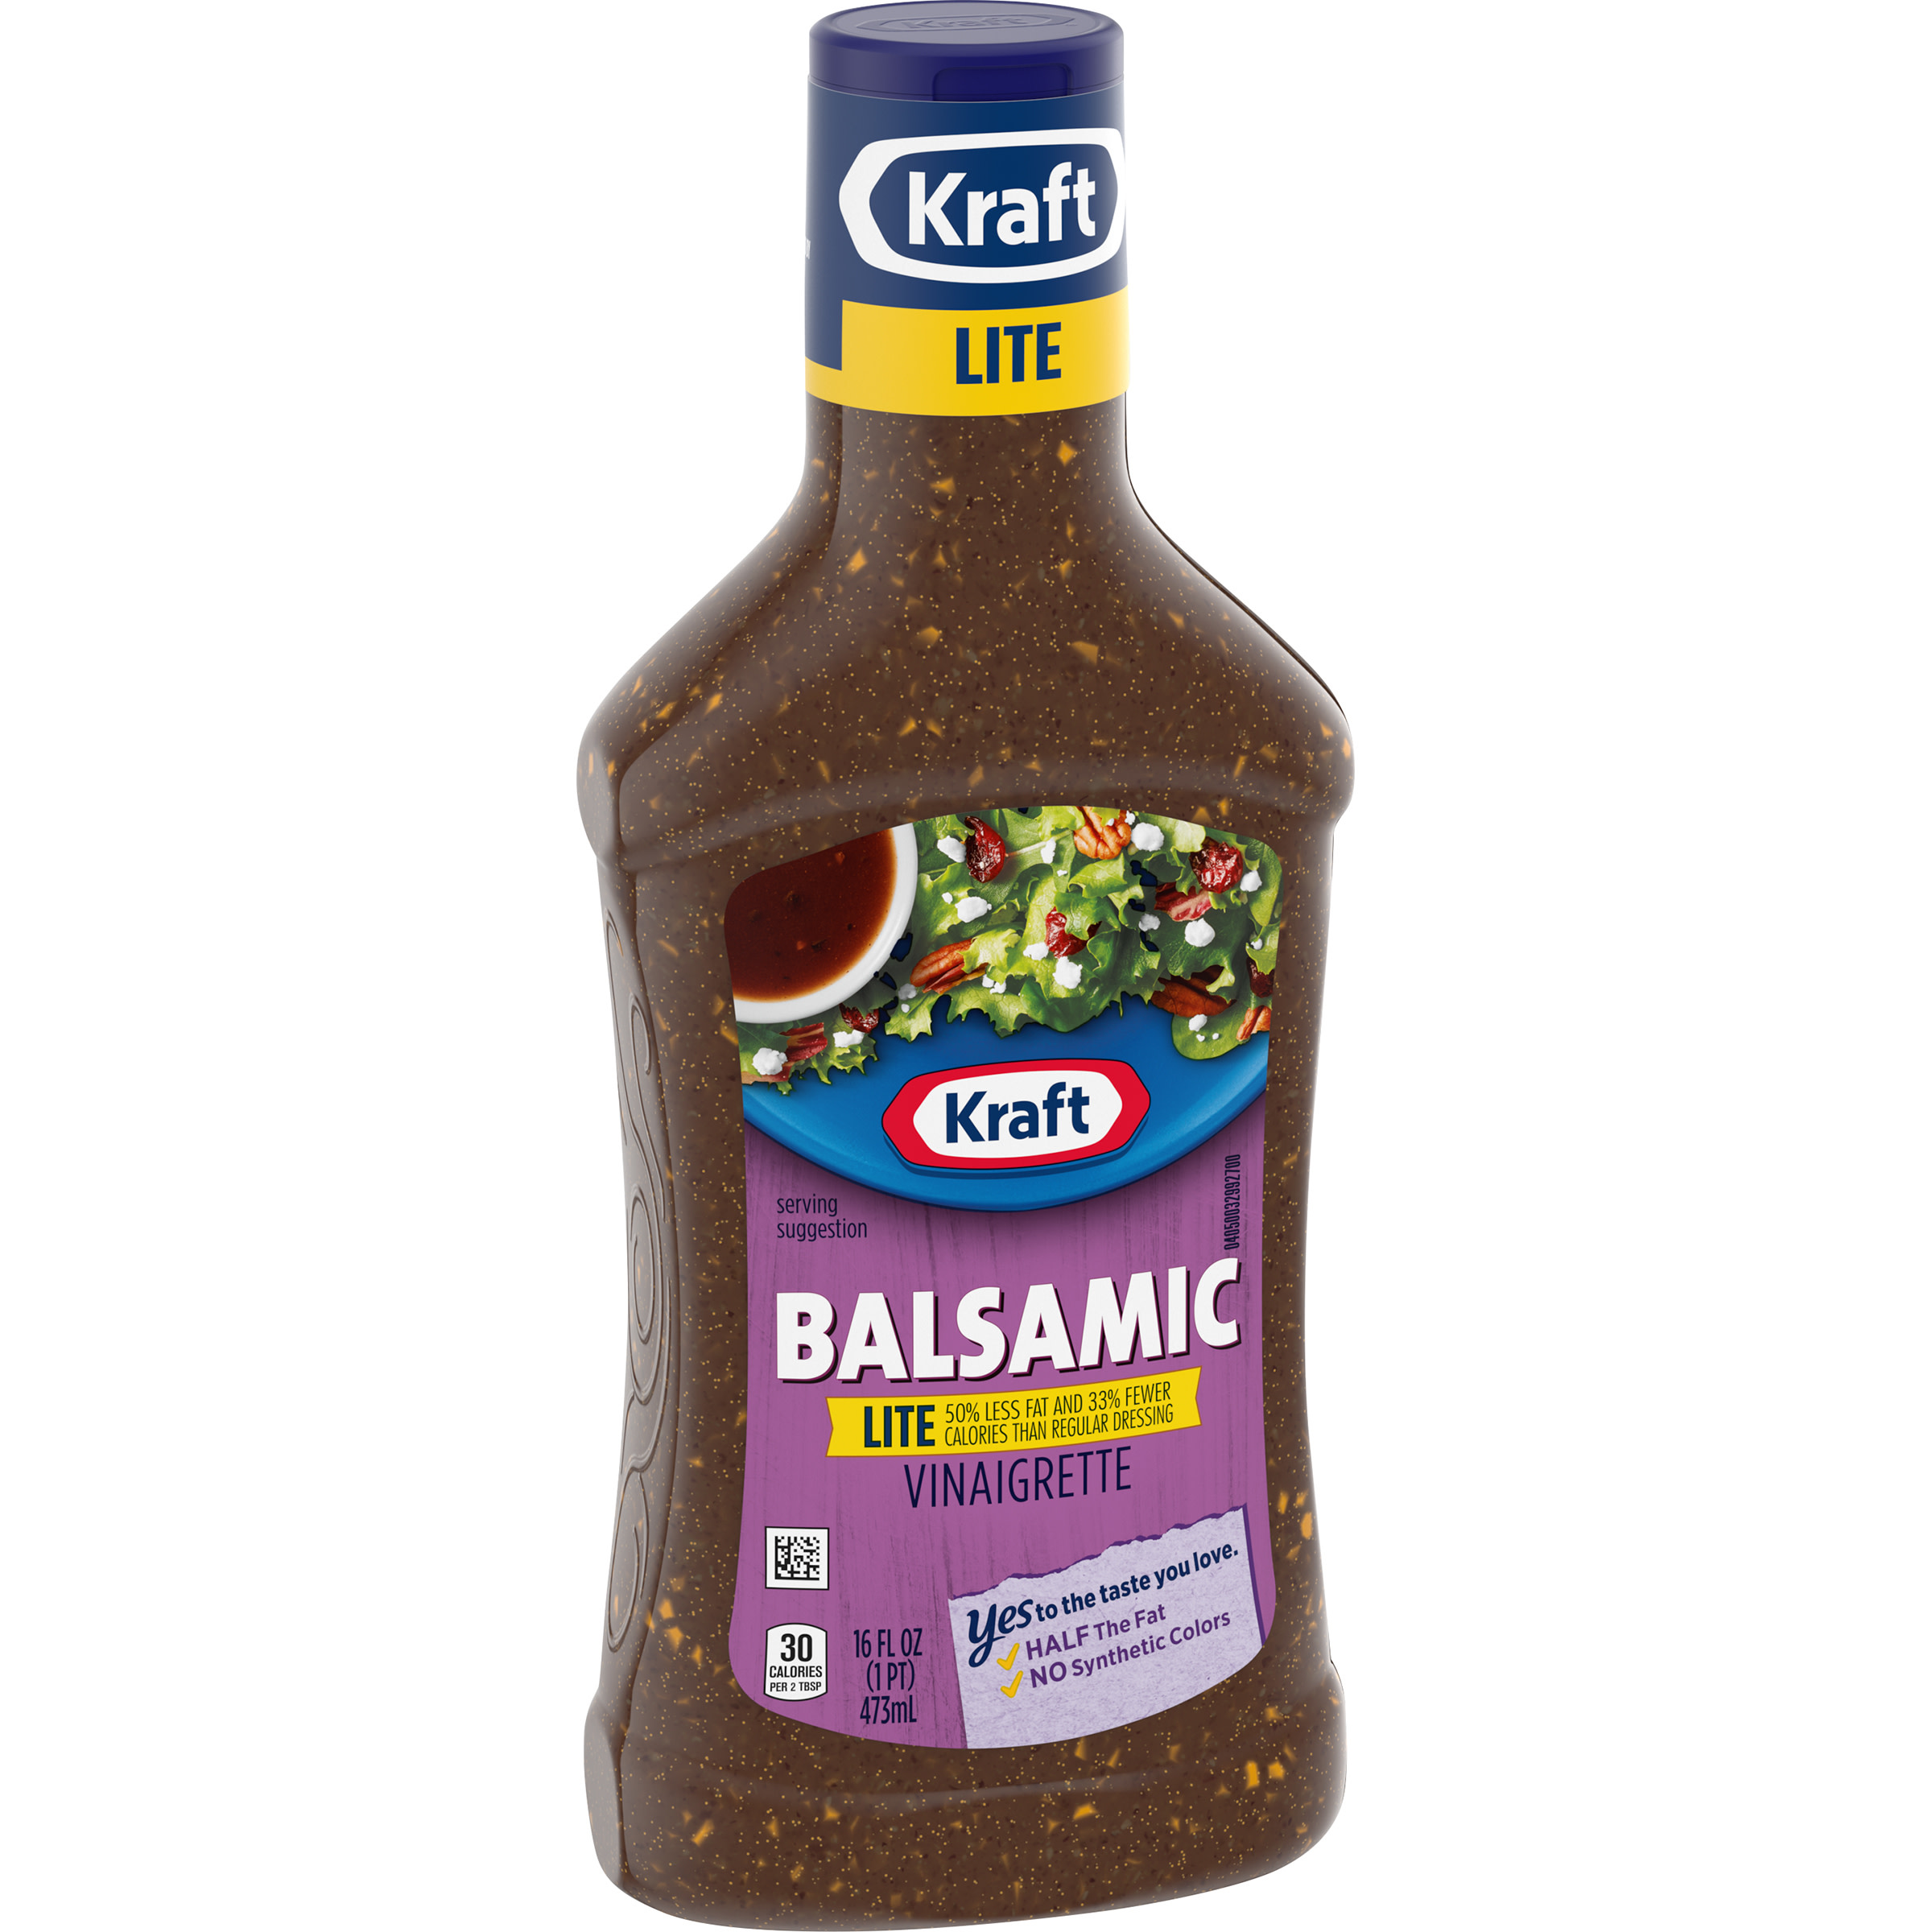 Kraft Balsamic Vinaigrette Lite Salad Dressing, 16 fl oz Bottle - image 4 of 9